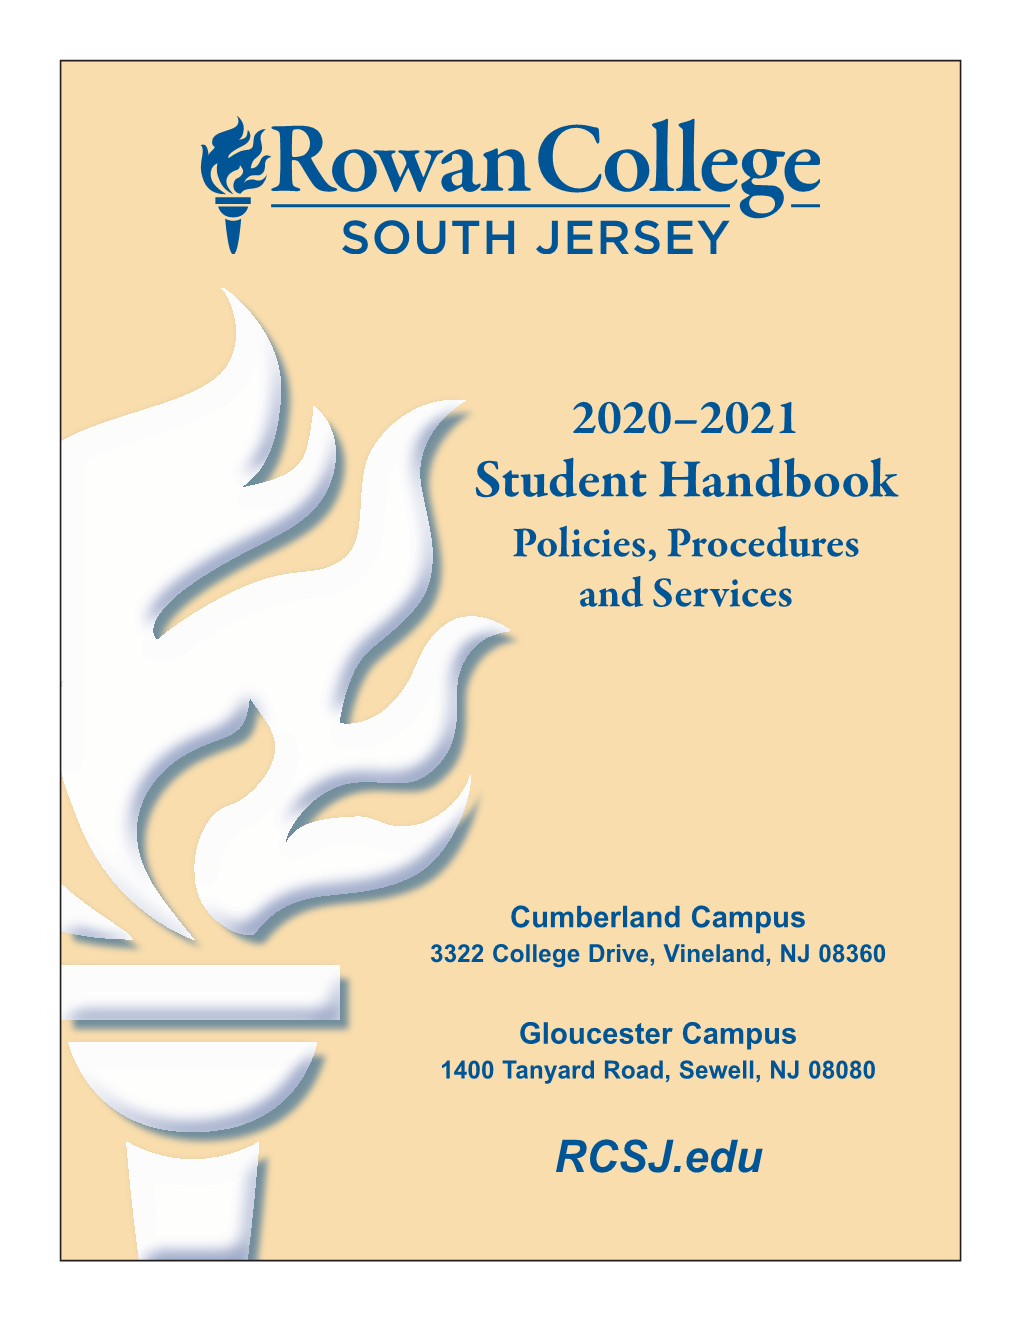 Student Handbook 2020